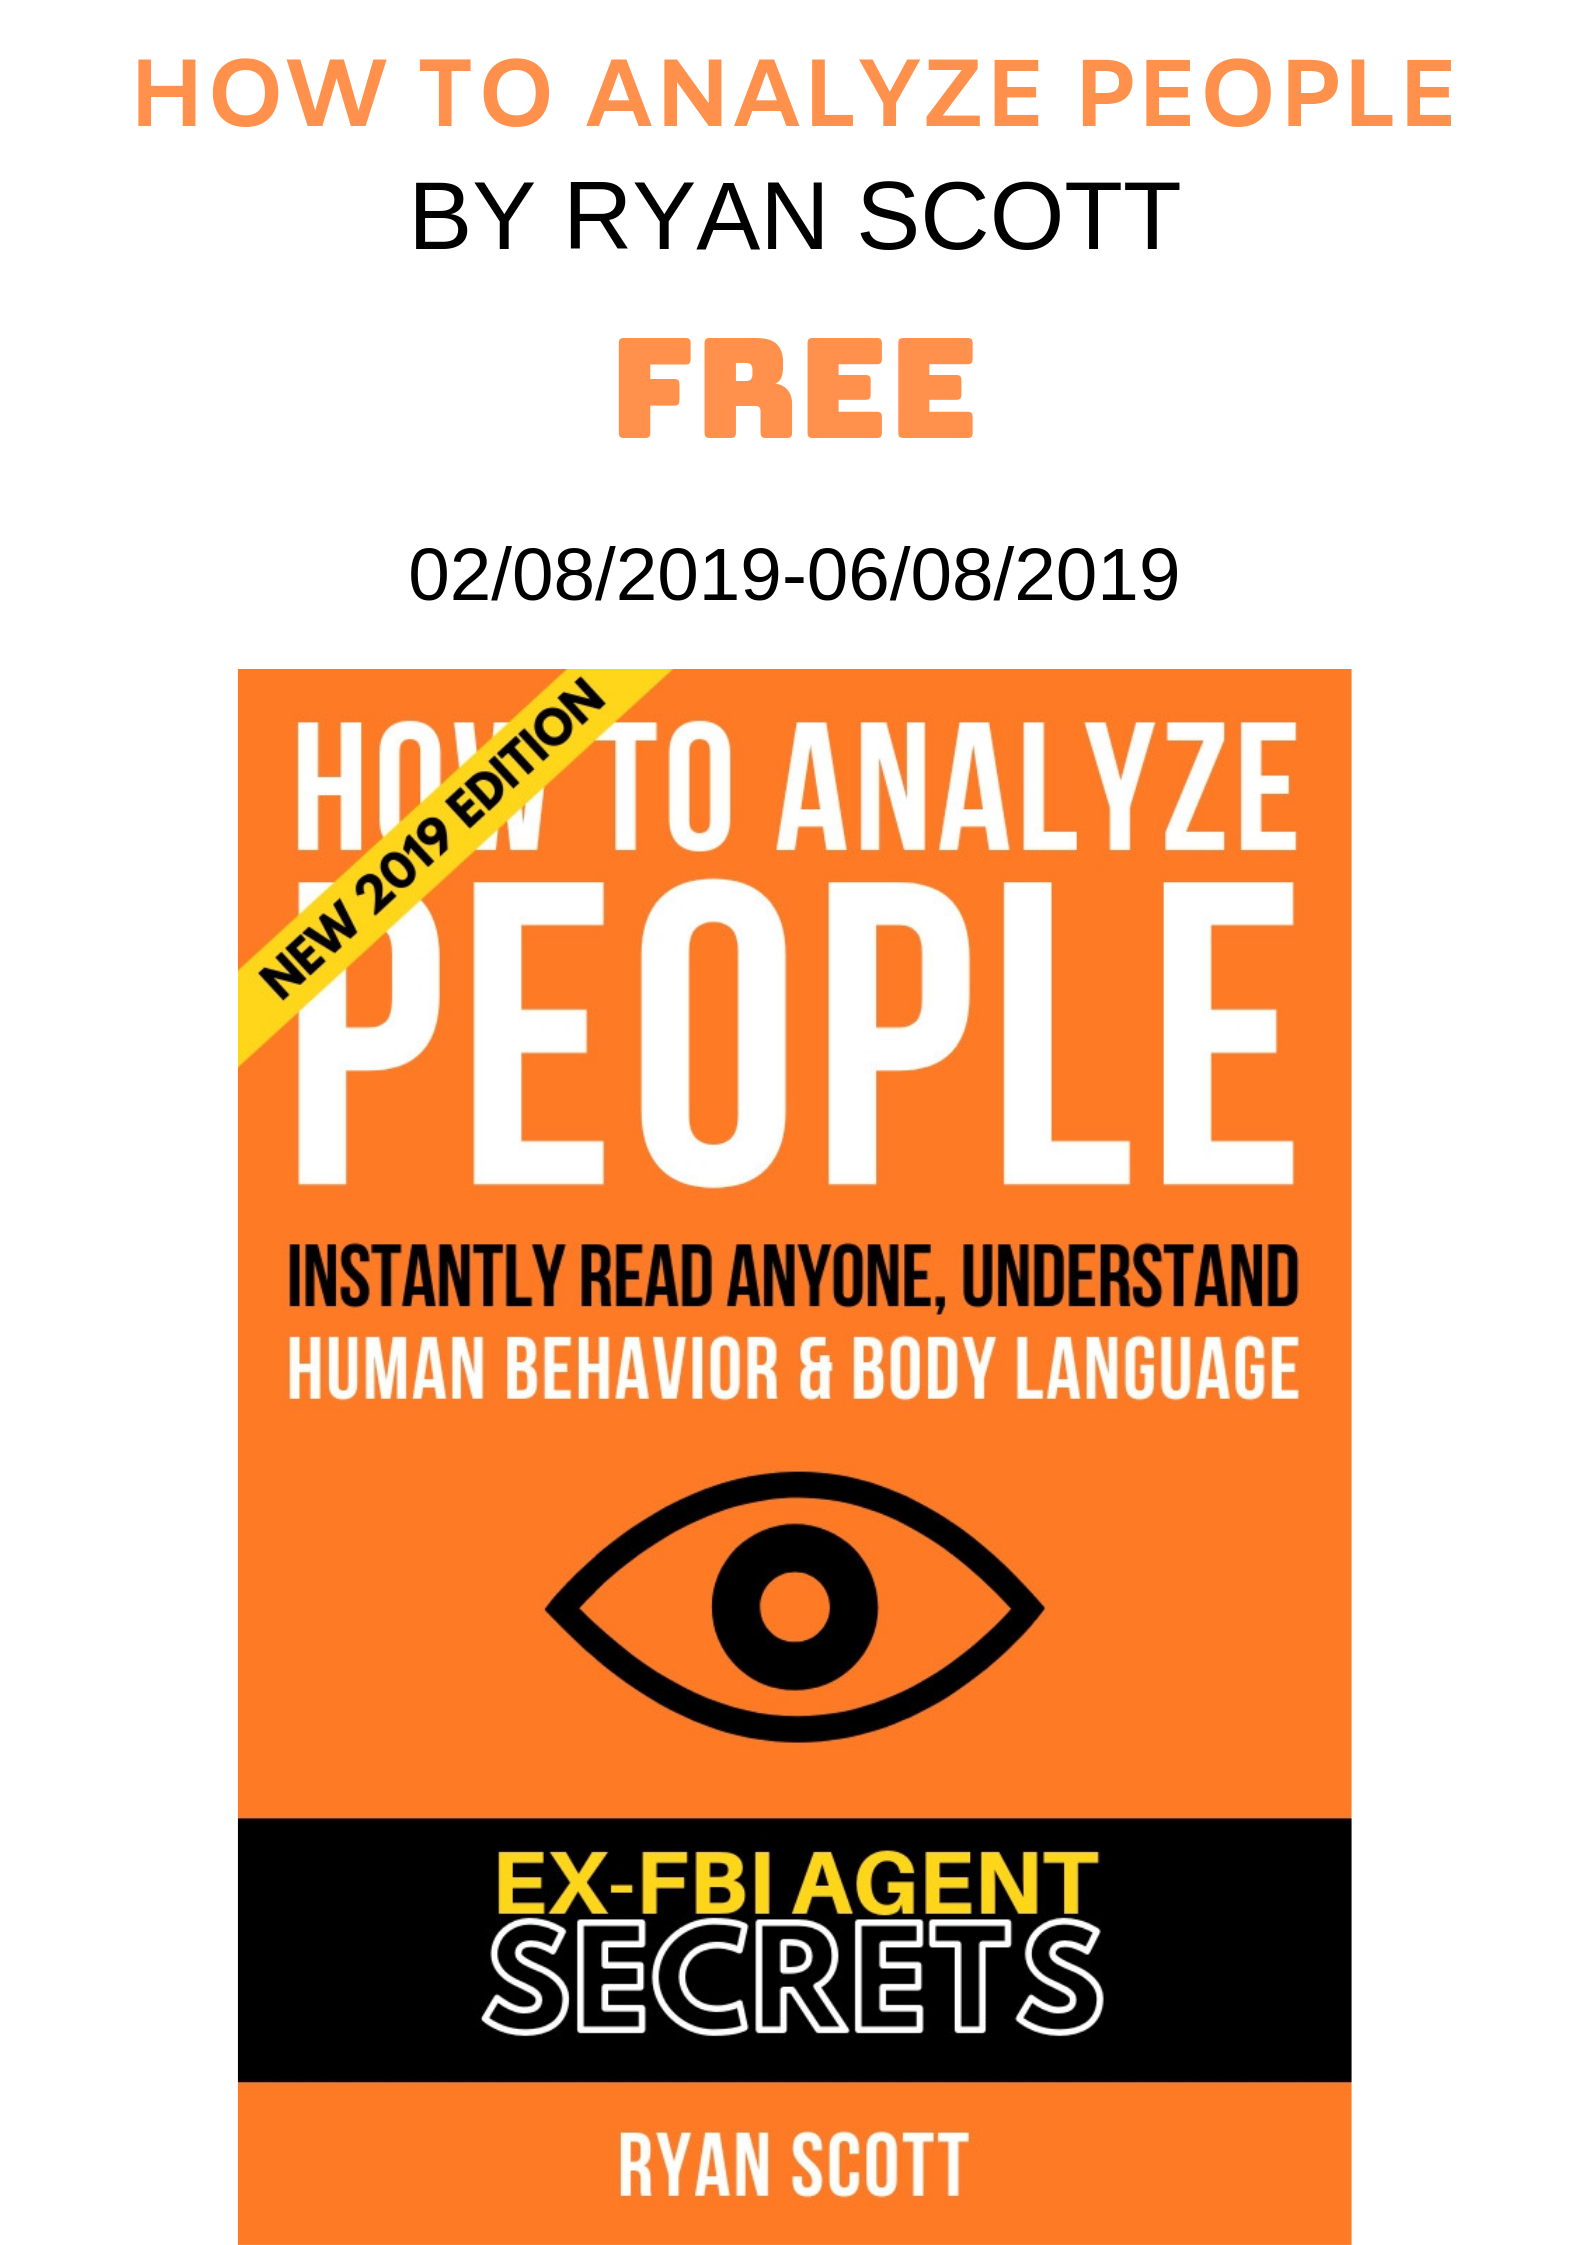 FREE: How To Analyze People by Ryan Scott